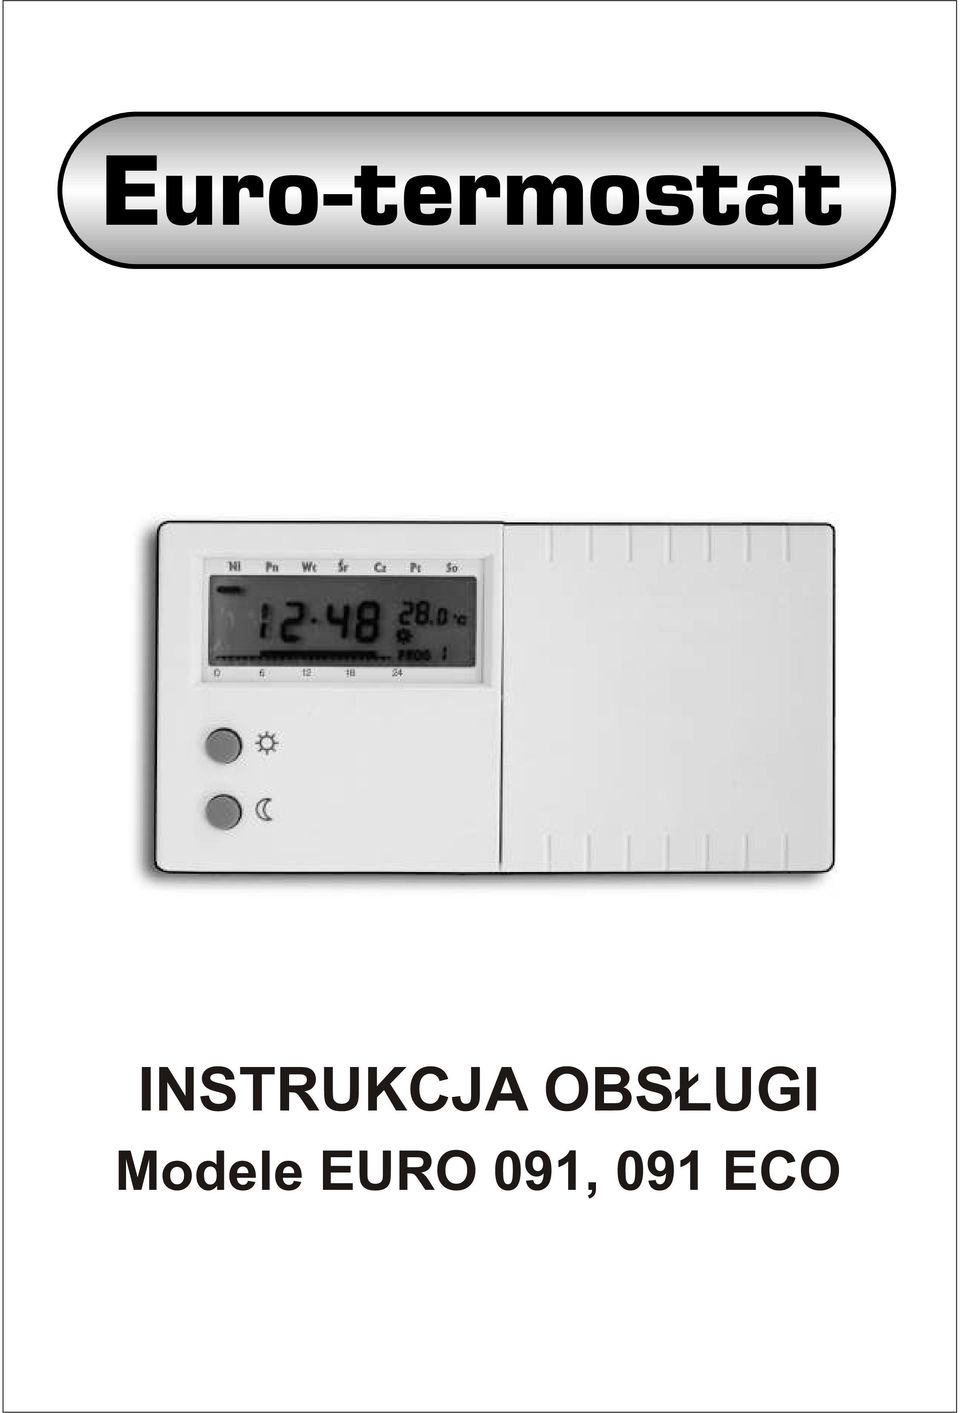 Euro-termostat INSTRUKCJA OBS UGI. Modele EURO 091, 091 ECO - PDF Darmowe  pobieranie